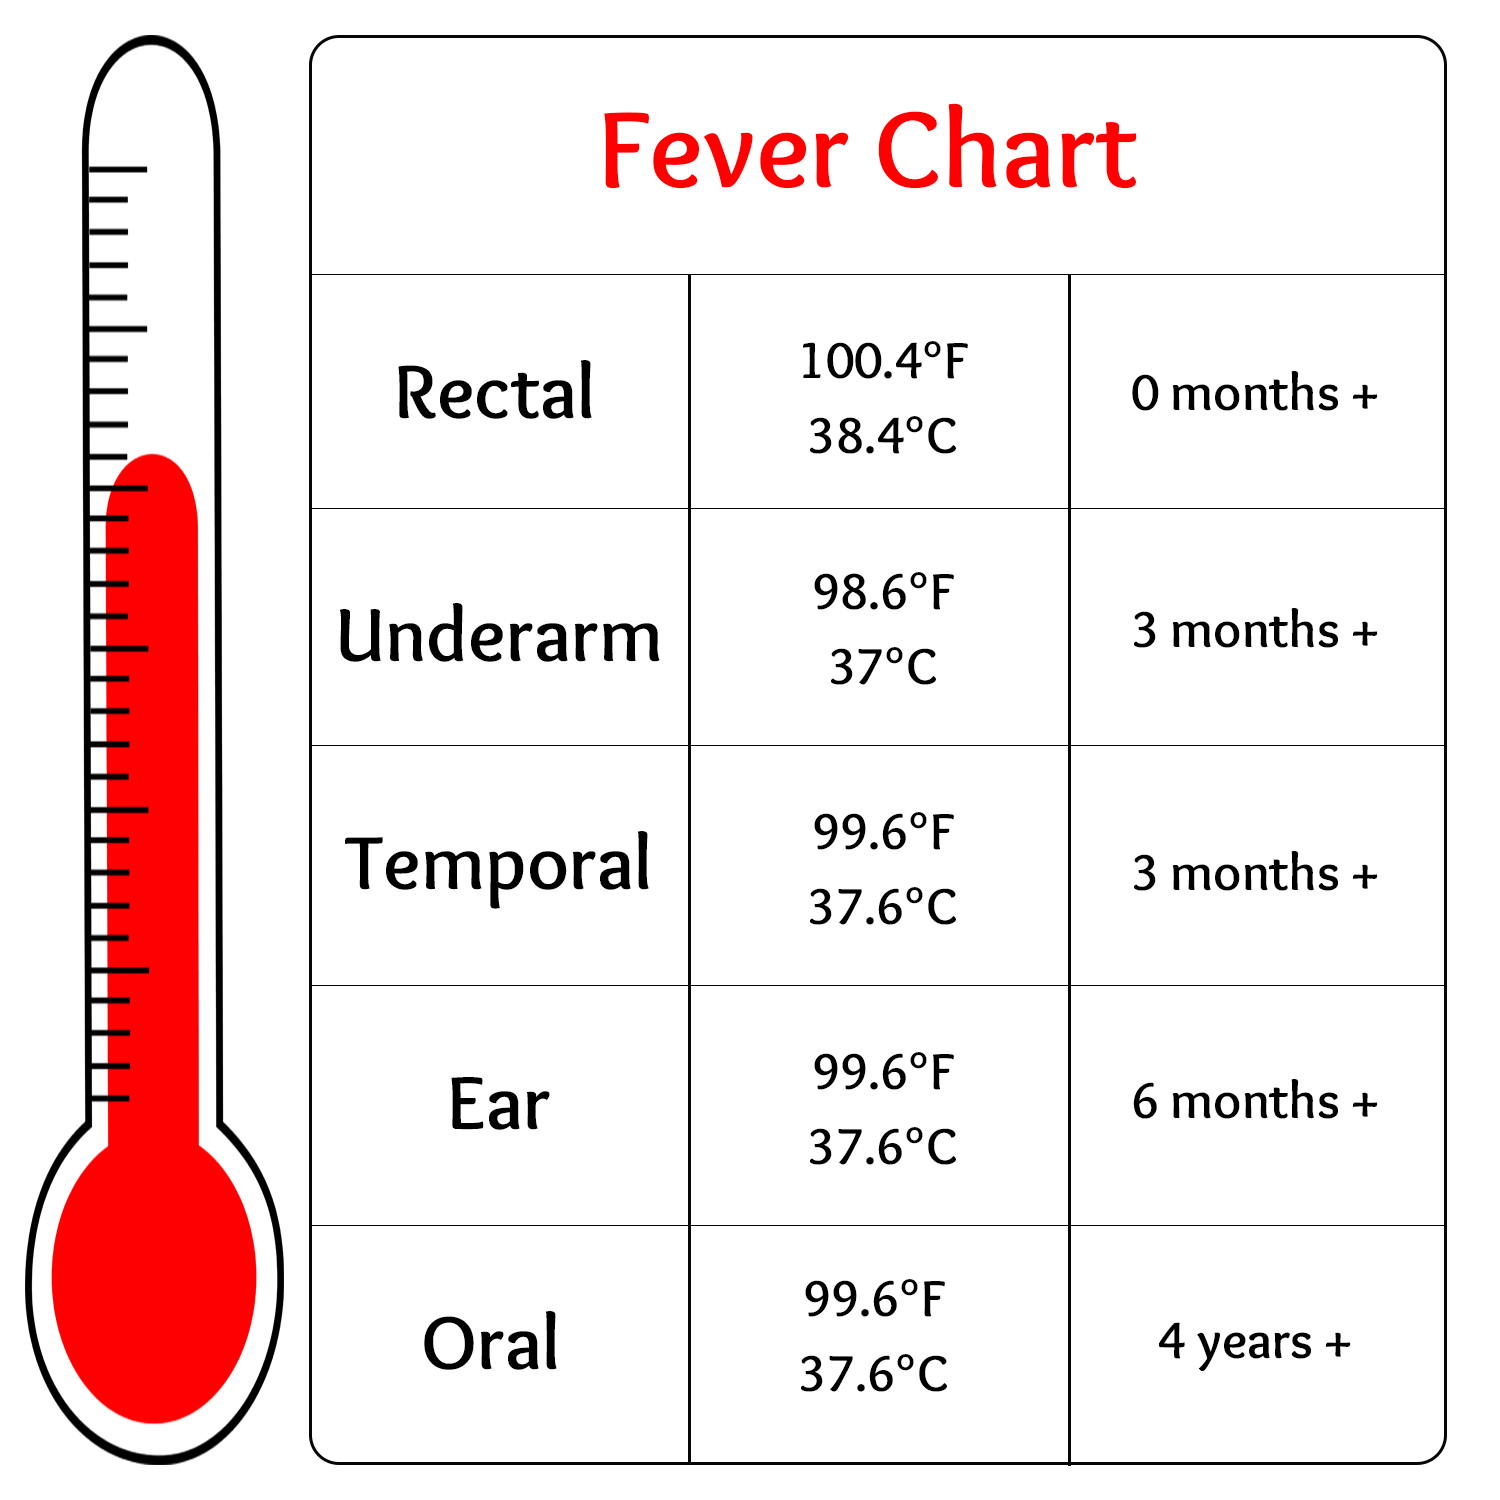 Fever Chart 